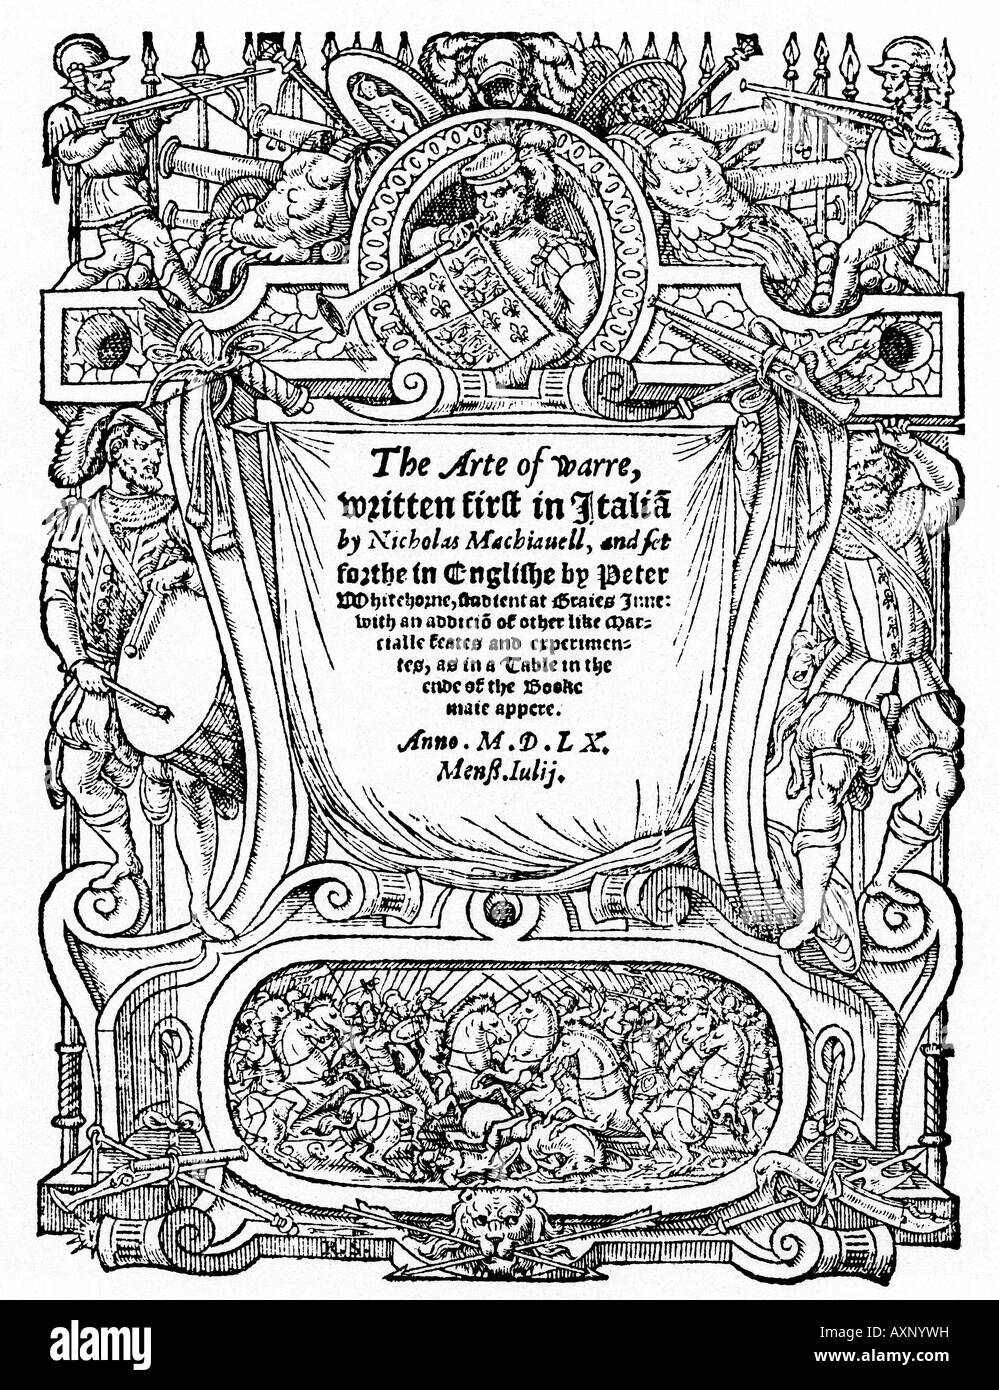 L'ARTE DE WARRE Frontespice de l'ouvrage de Nicholas Machiavel dans la traduction anglaise de 1560 Banque D'Images